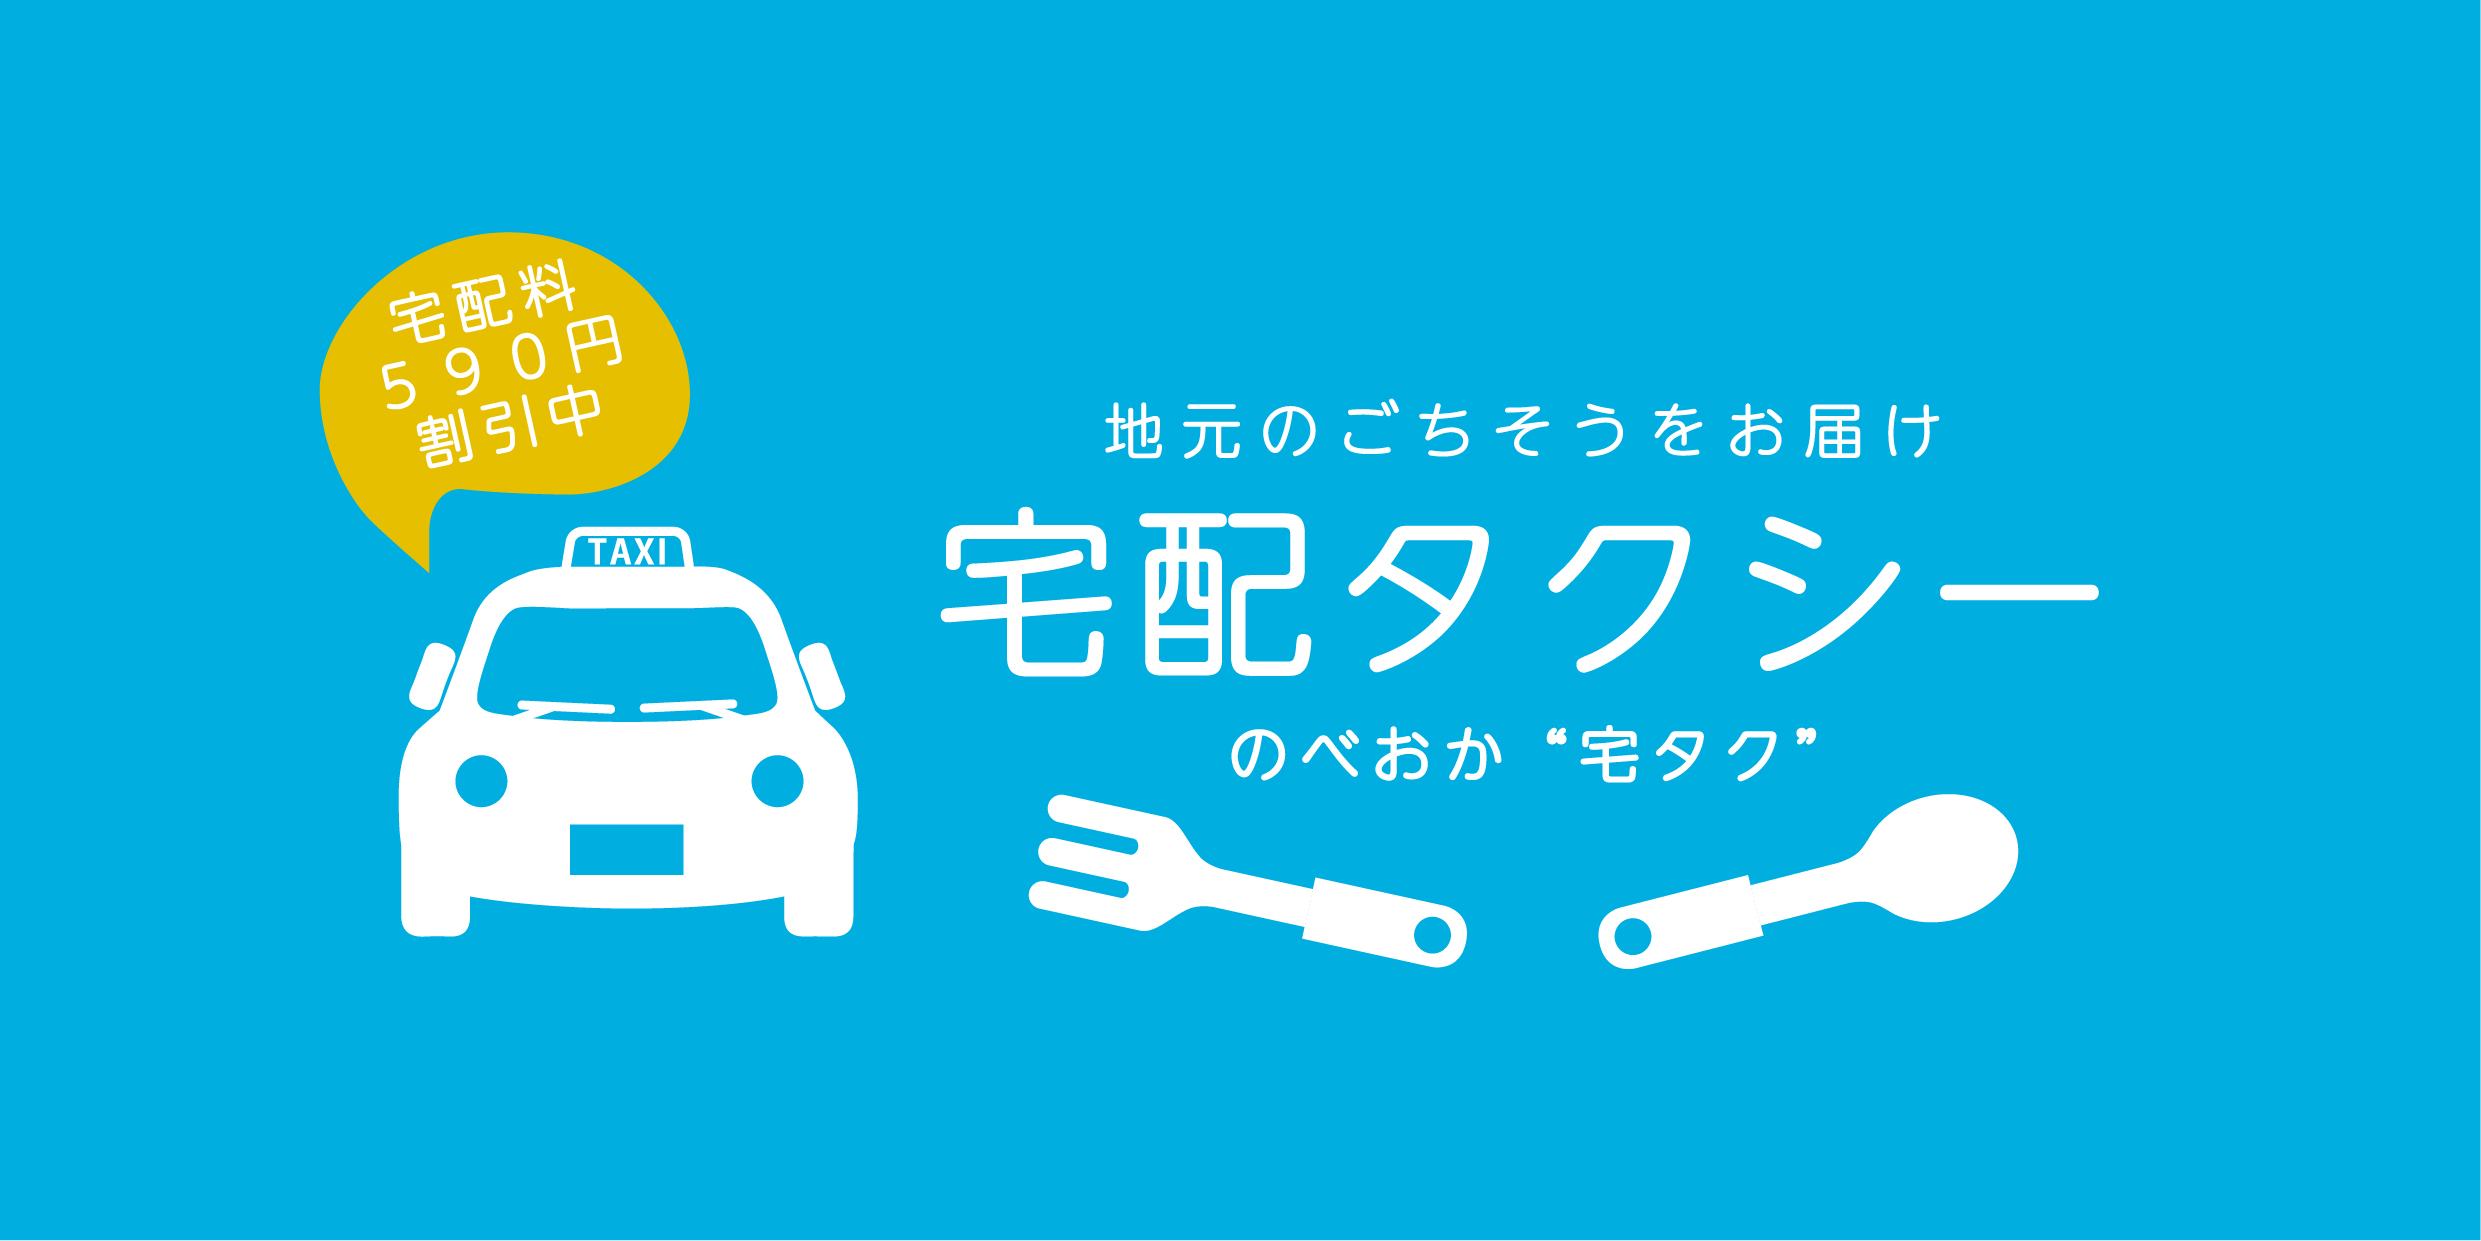 飲食店・タクシー応援プロジェクト「宅配タクシー」が始まりました！